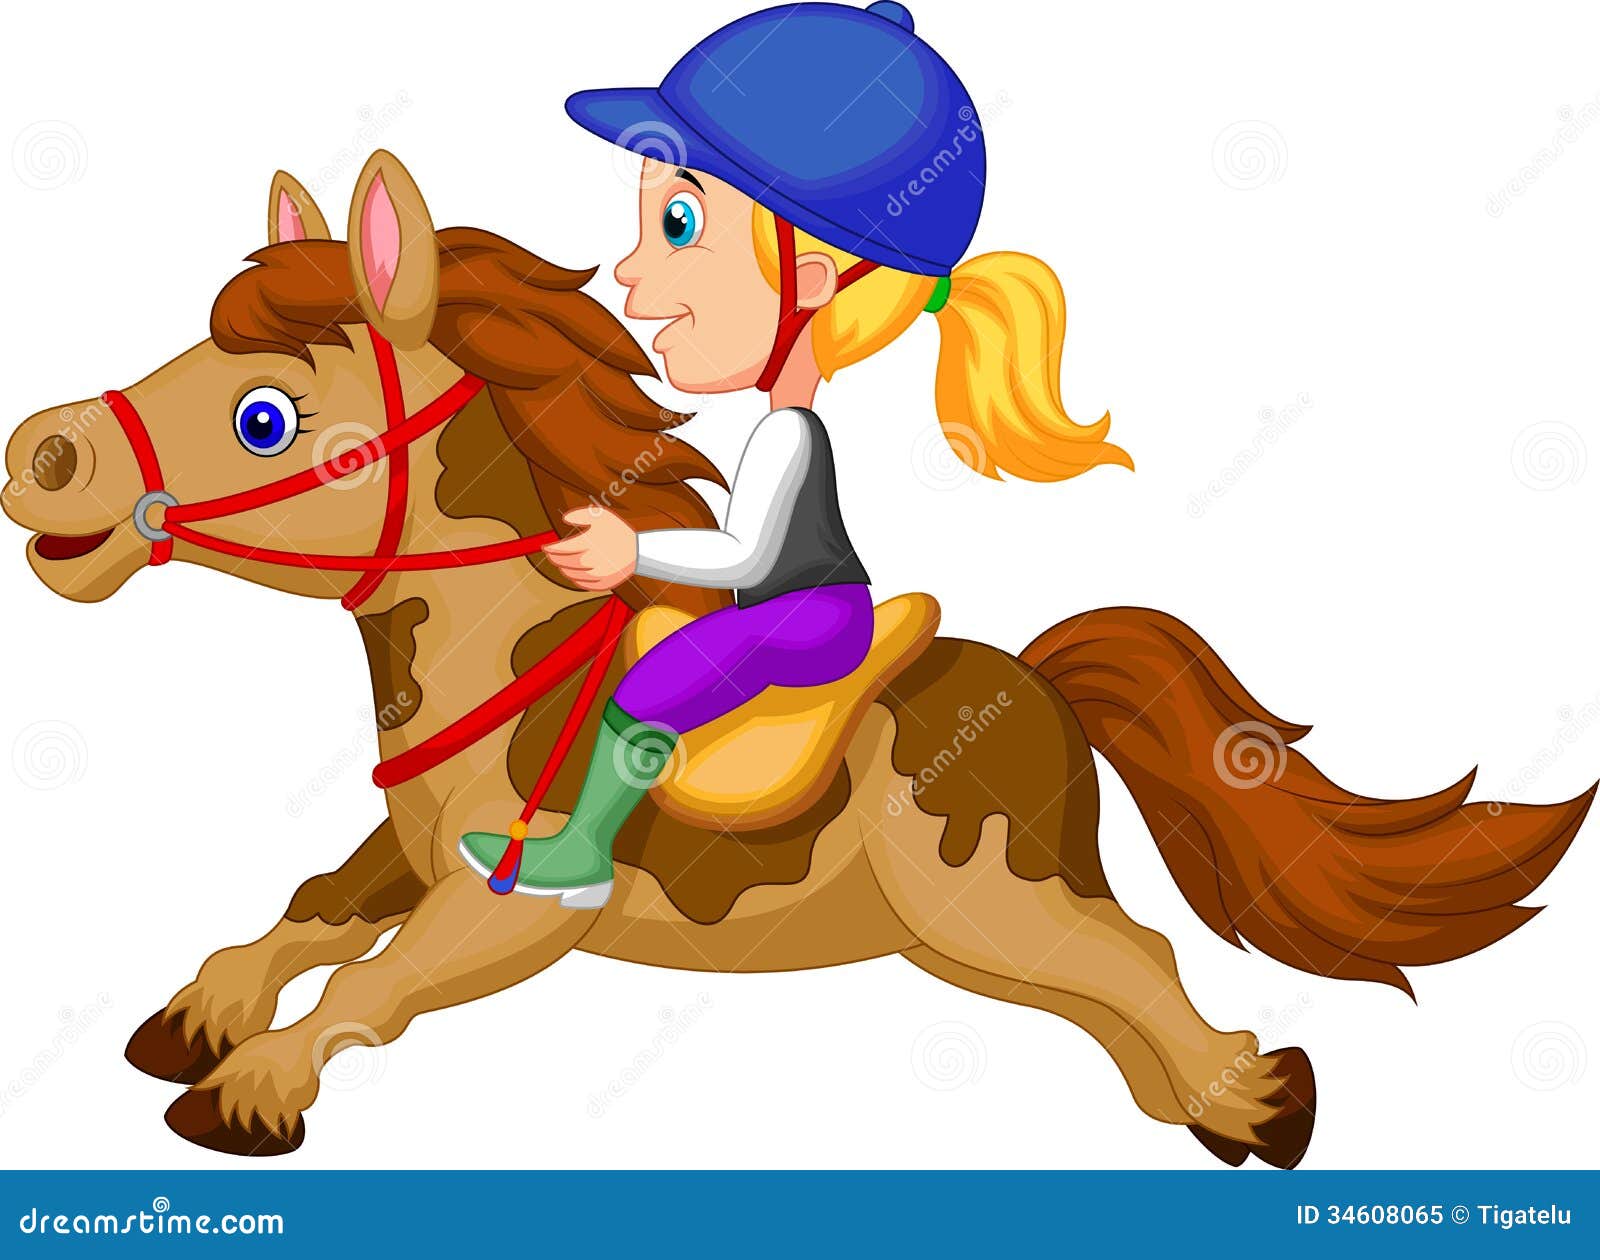 clip art girl riding horse - photo #8